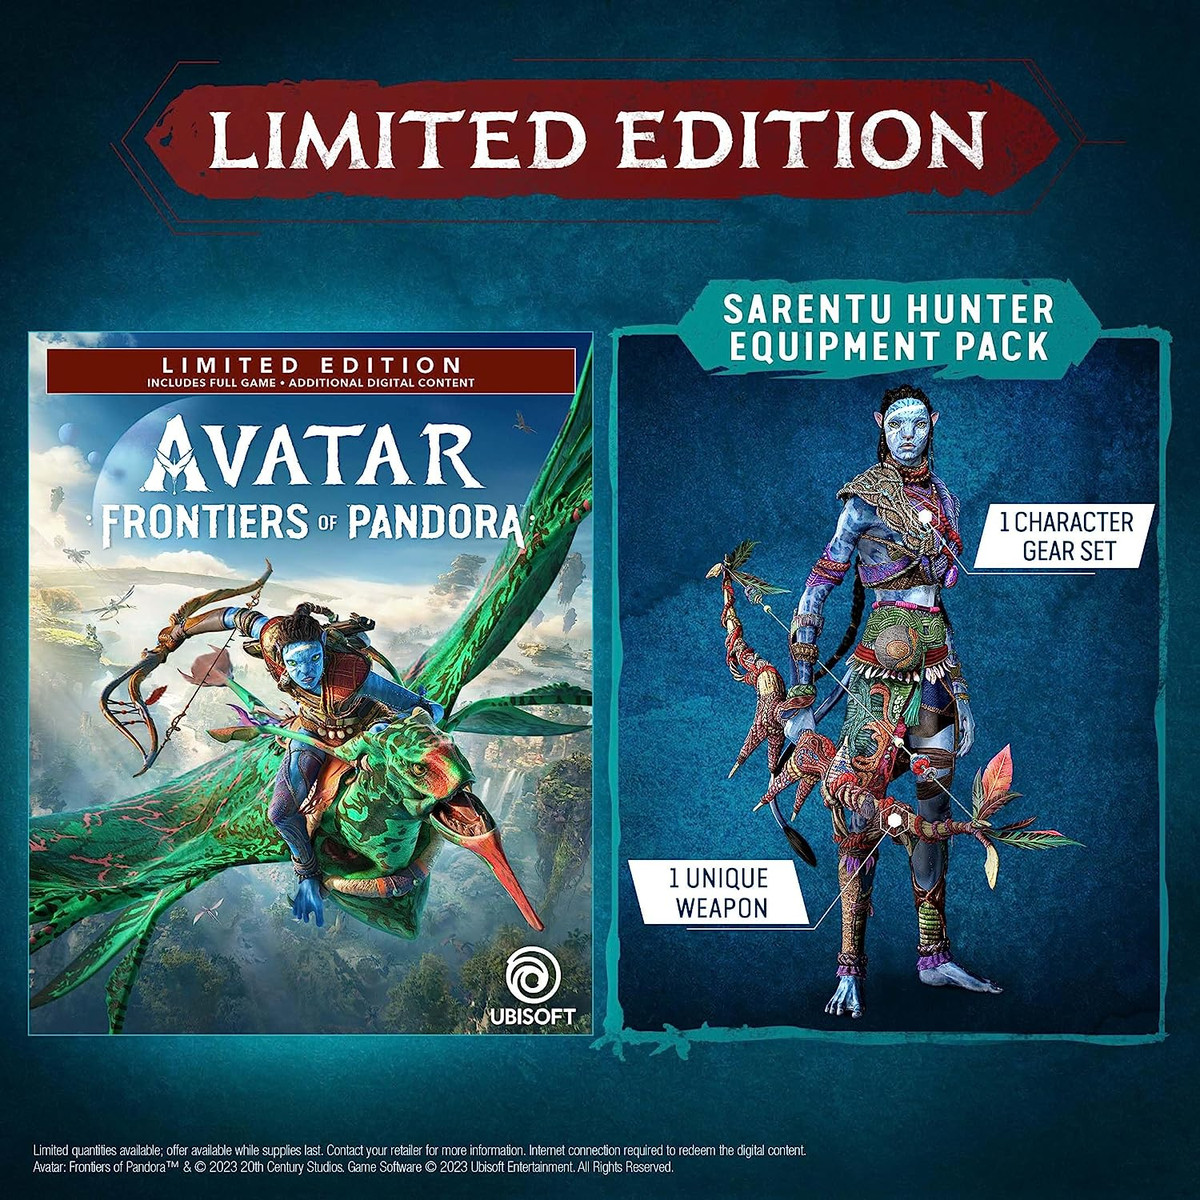 Un'immagine stock del Sarentu Hunter Equipment Pack incluso nell'edizione limitata di Avatar: Frontiers of Pandora